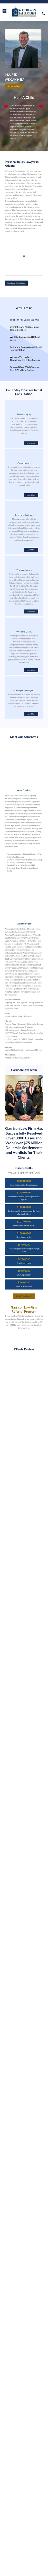 Garrison Law Firm - Peoria AZ Lawyers